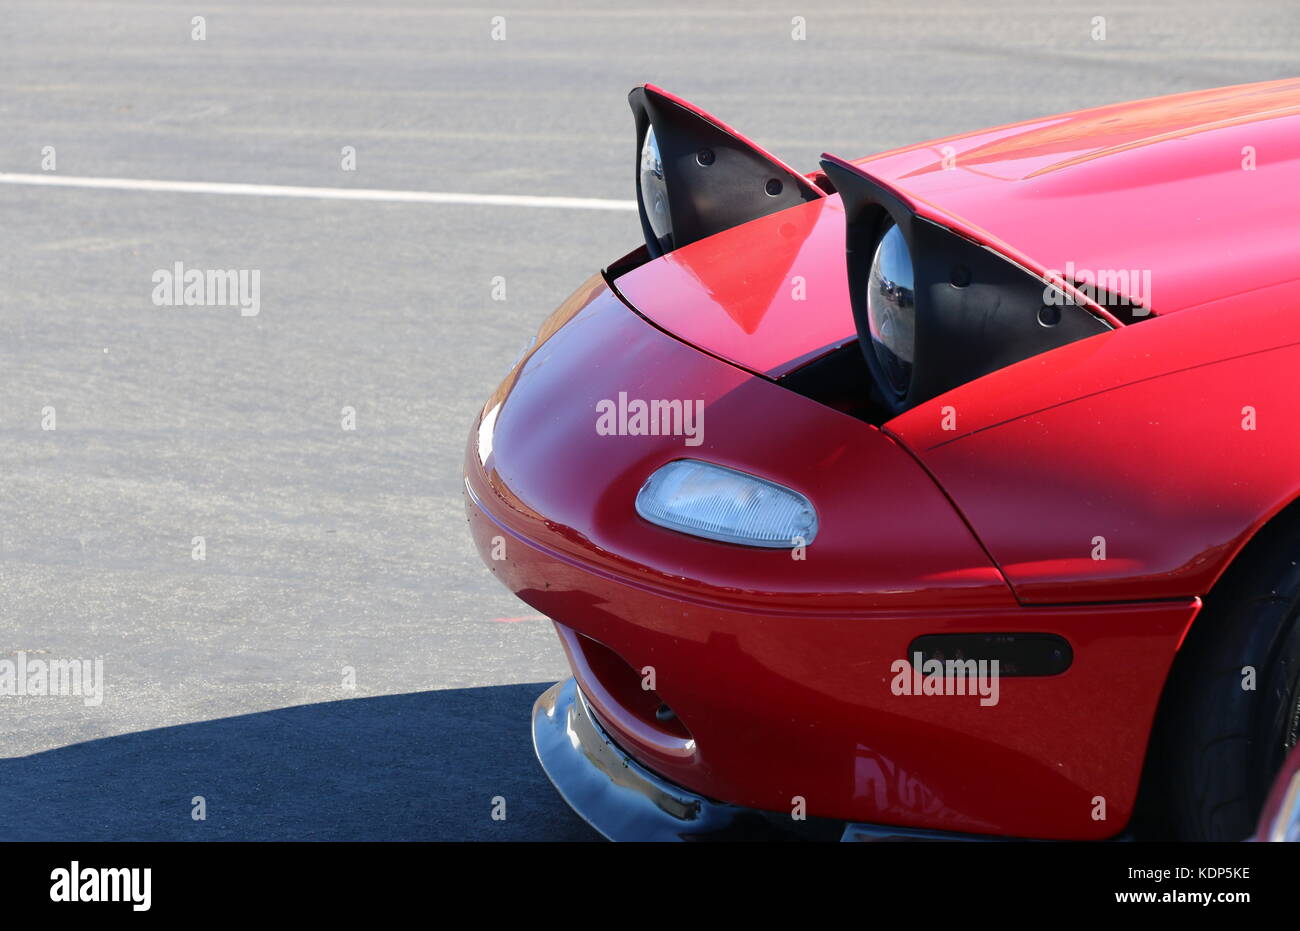 Pop up phares sur une Mazda Miata rouge. Banque D'Images